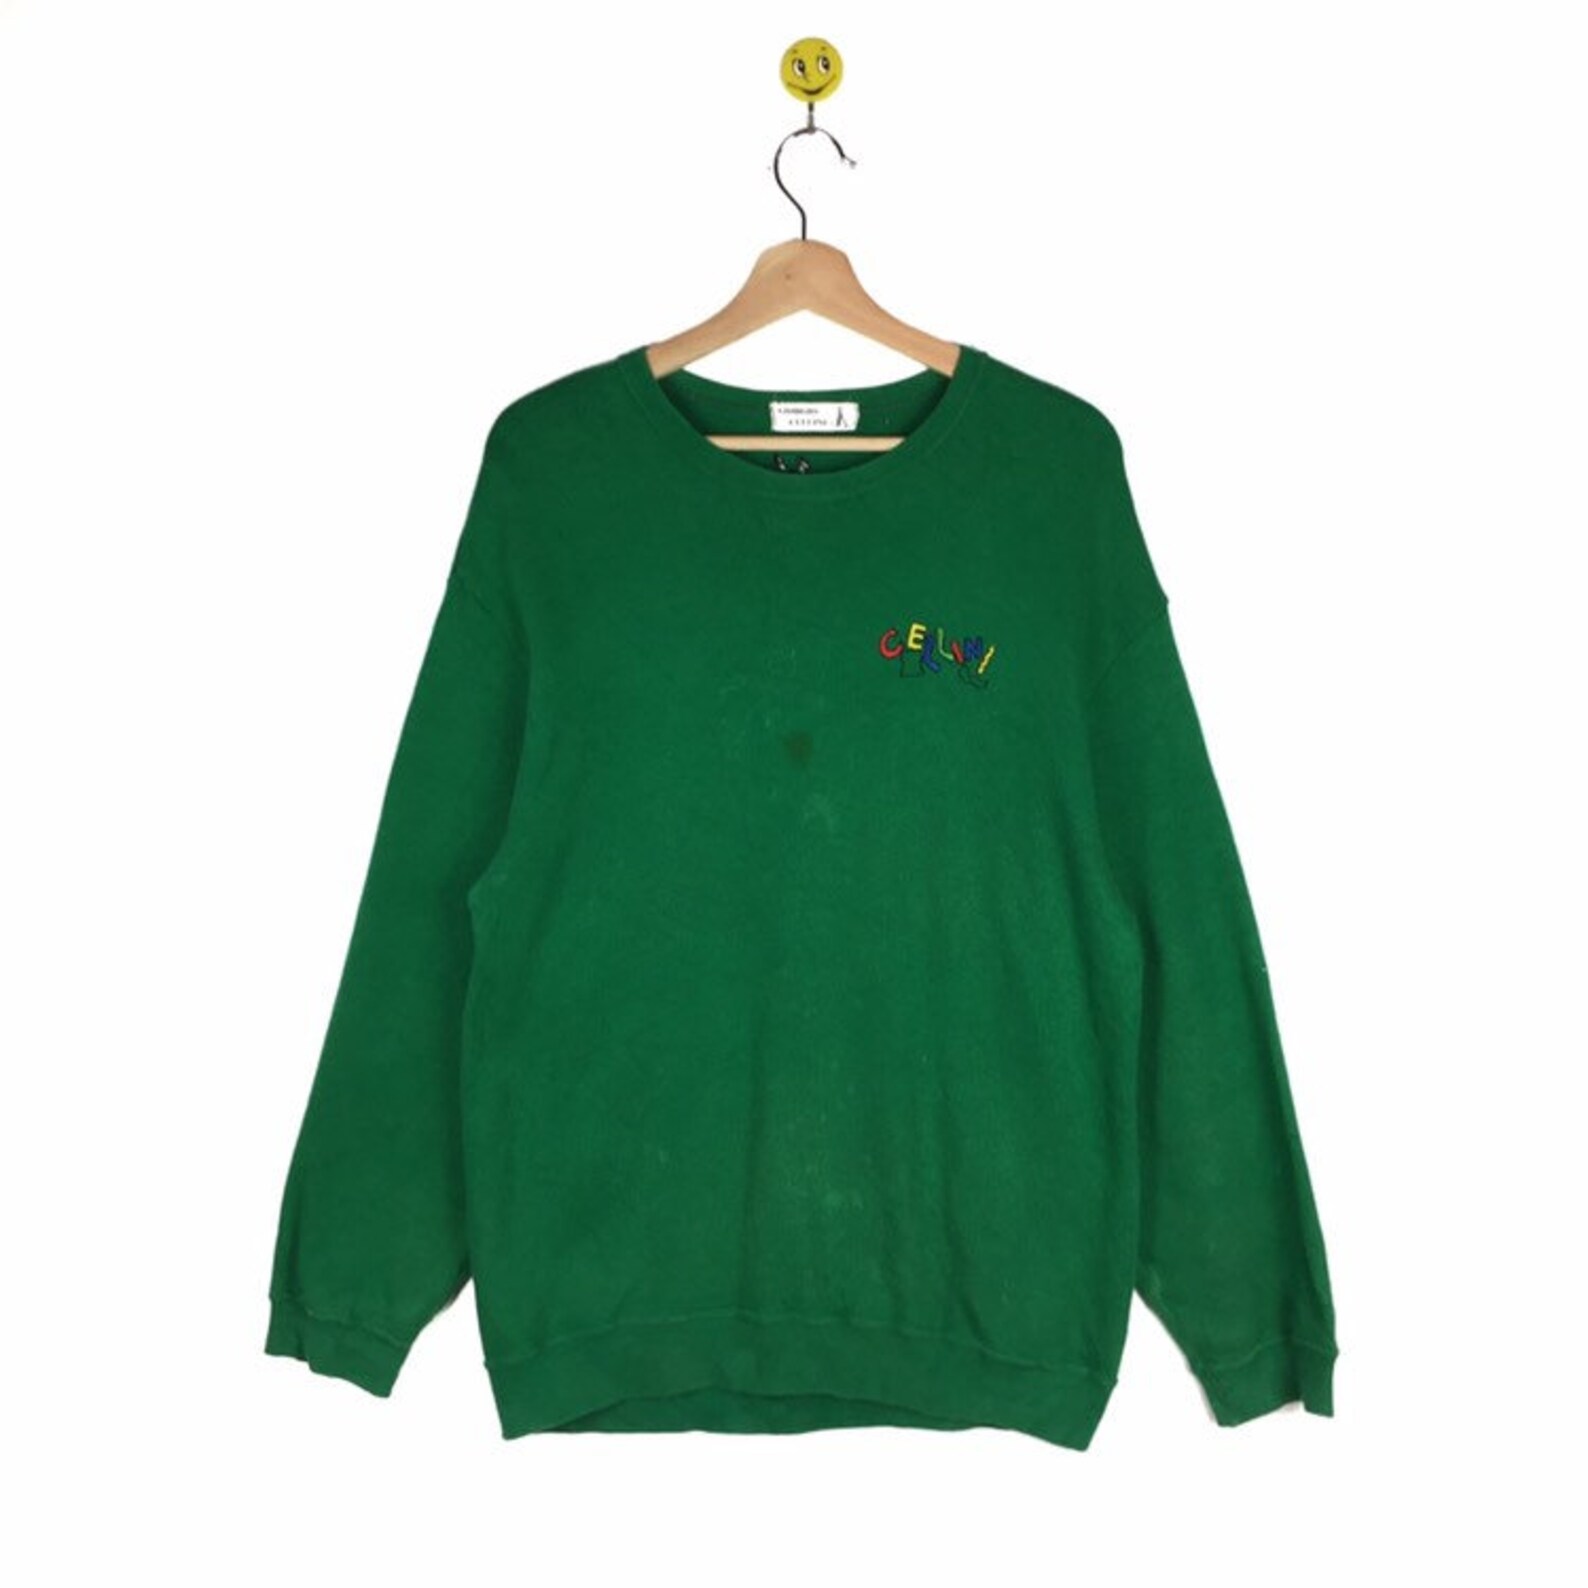 Rare Giorgio Cellini sweatshirt Giorgio Cellini pullover | Etsy